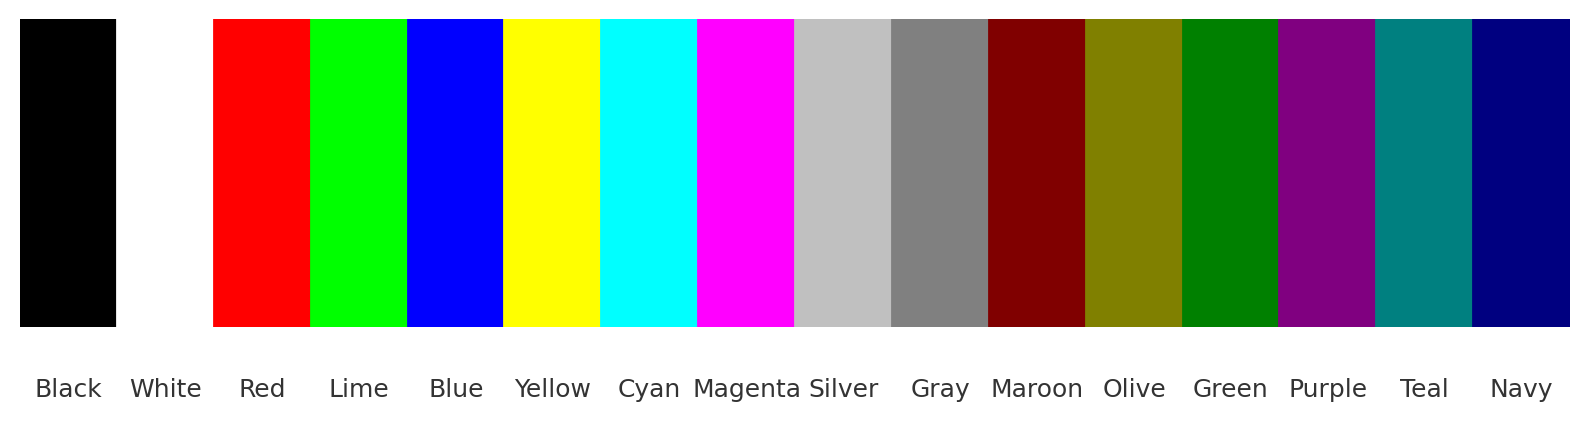 8-bit systems color palette